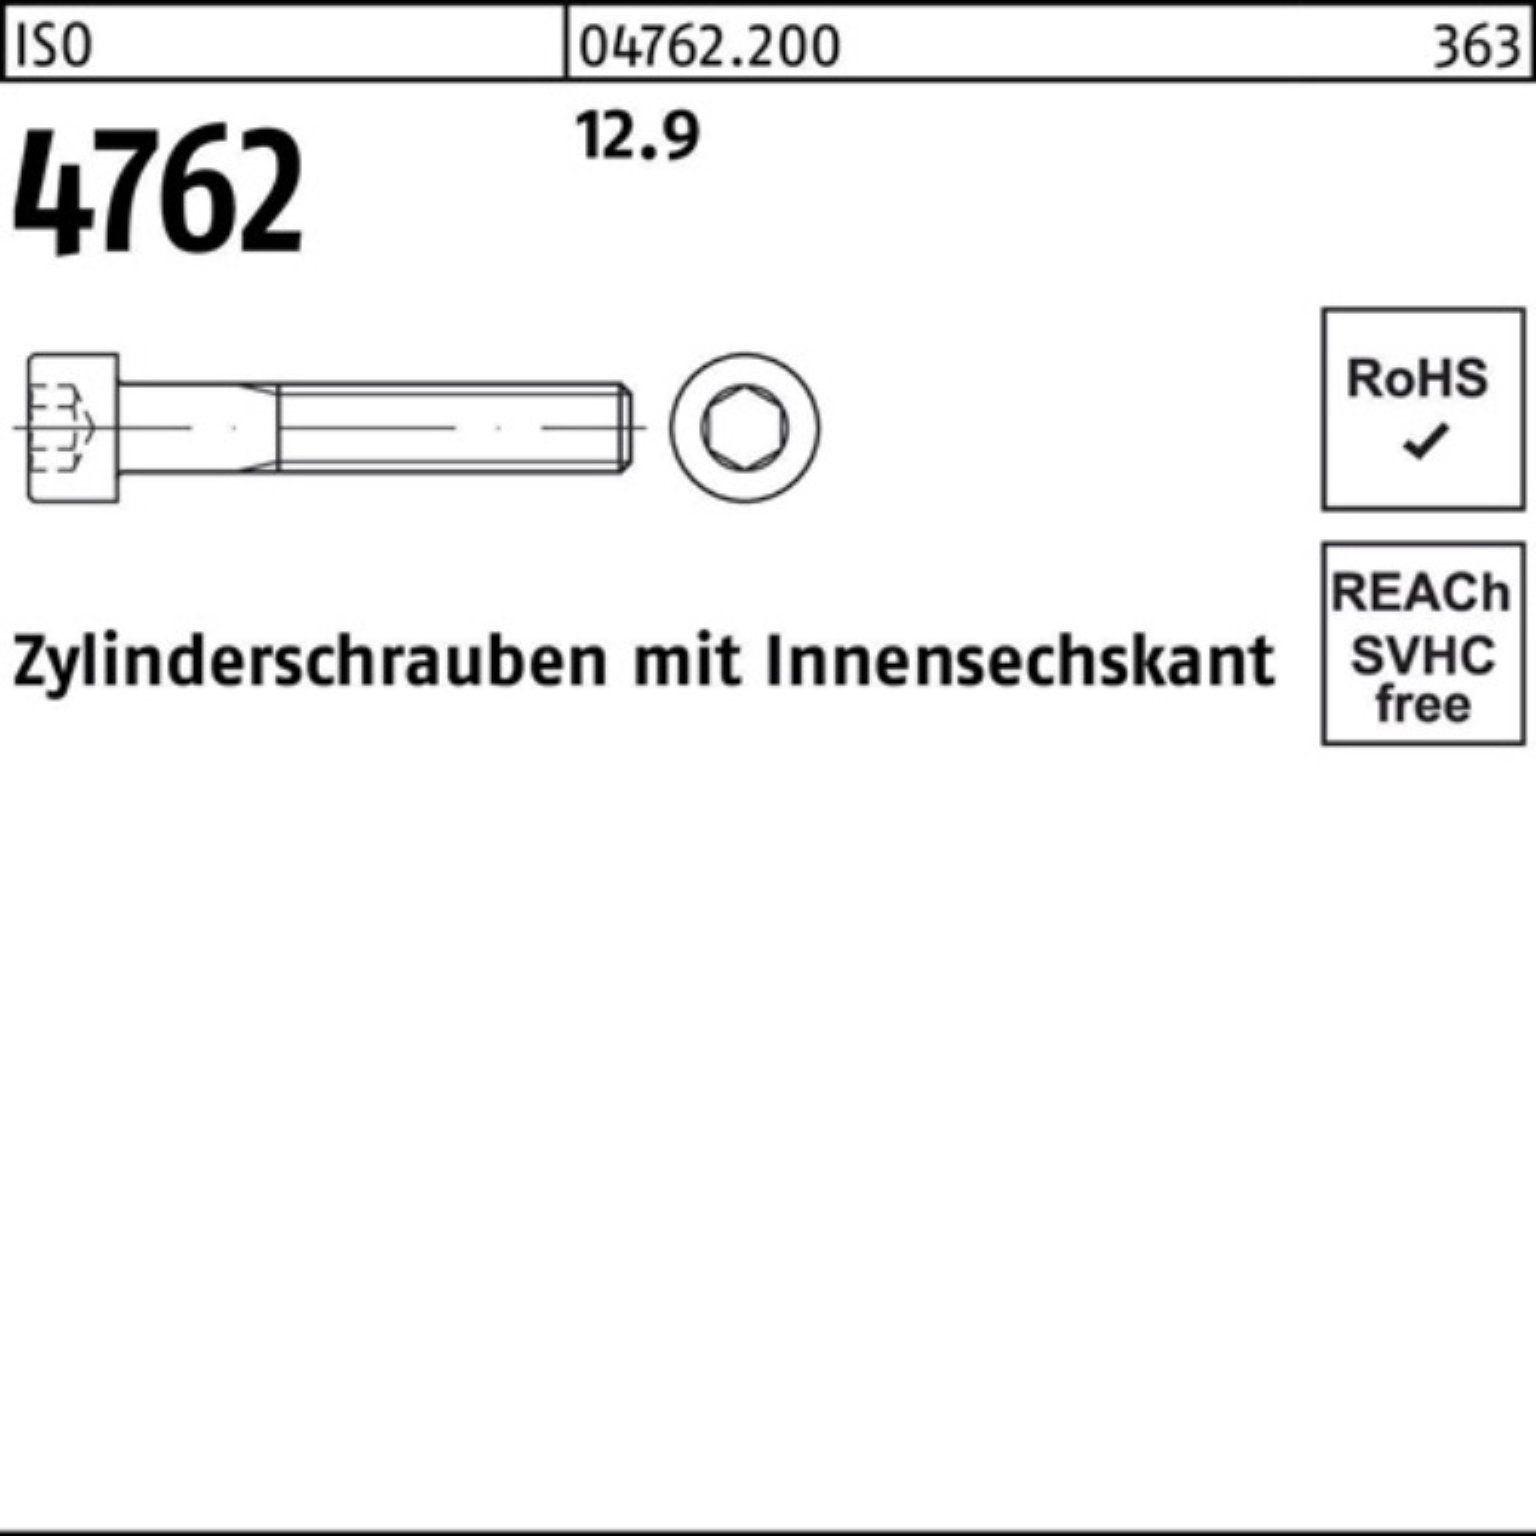 Pack Zylinderschraube M8x Stück Reyher Innen-6kt 50 12.9 4762 280 ISO Zylinderschraube 100er